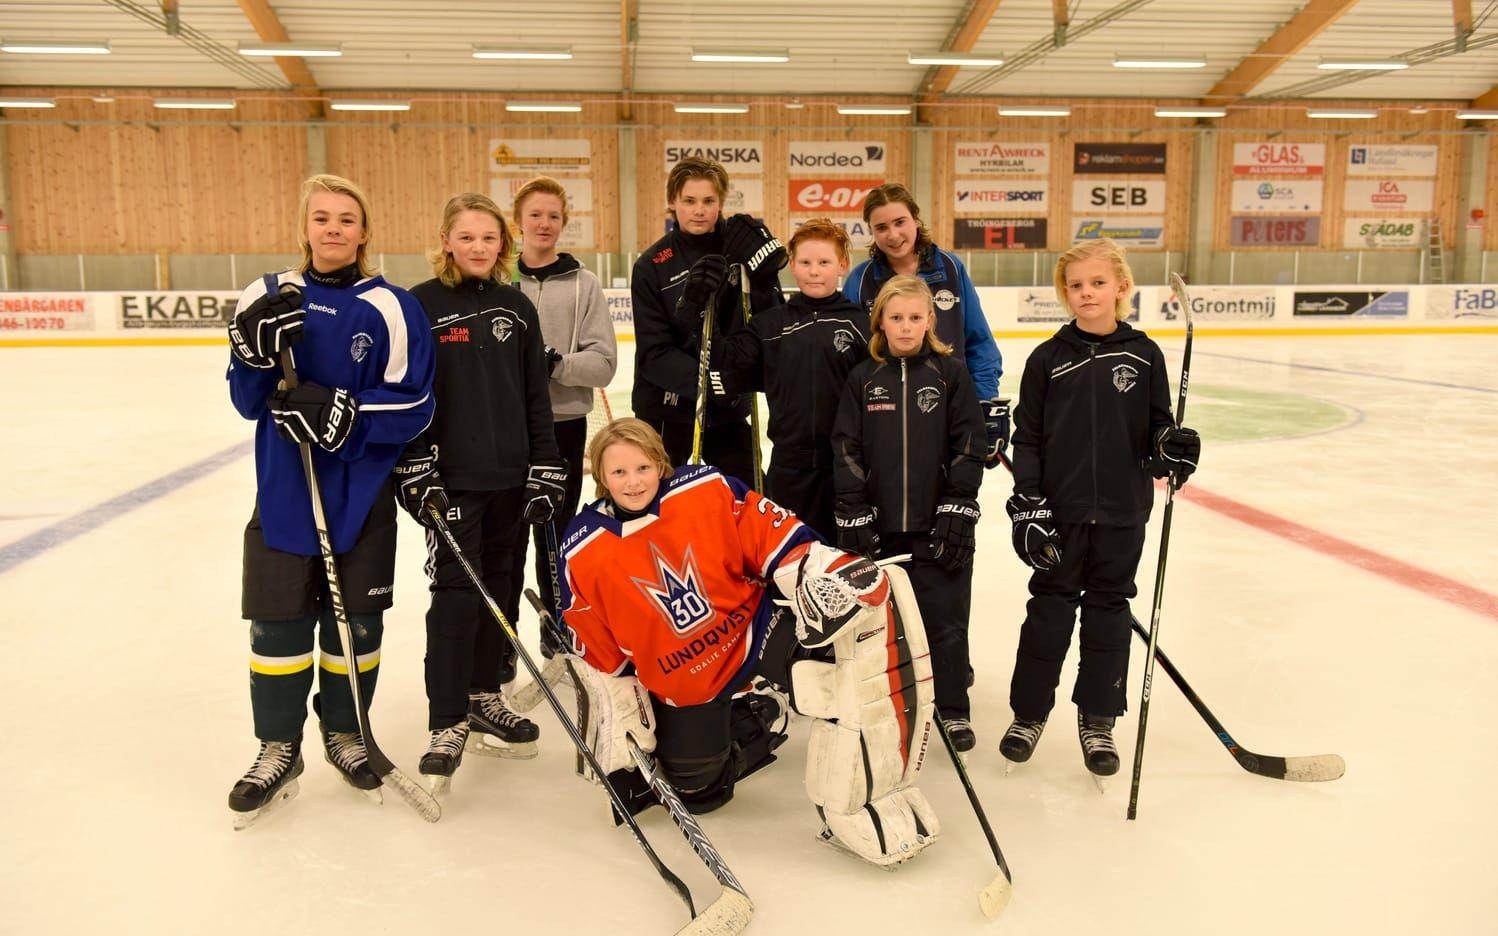 Falkenbergs hockeyklubb har funnits i sju år och har hela tiden haft tänket att a-laget ska ha minst 75 procent av sina egna produkter. Bild: Jill Wegerup